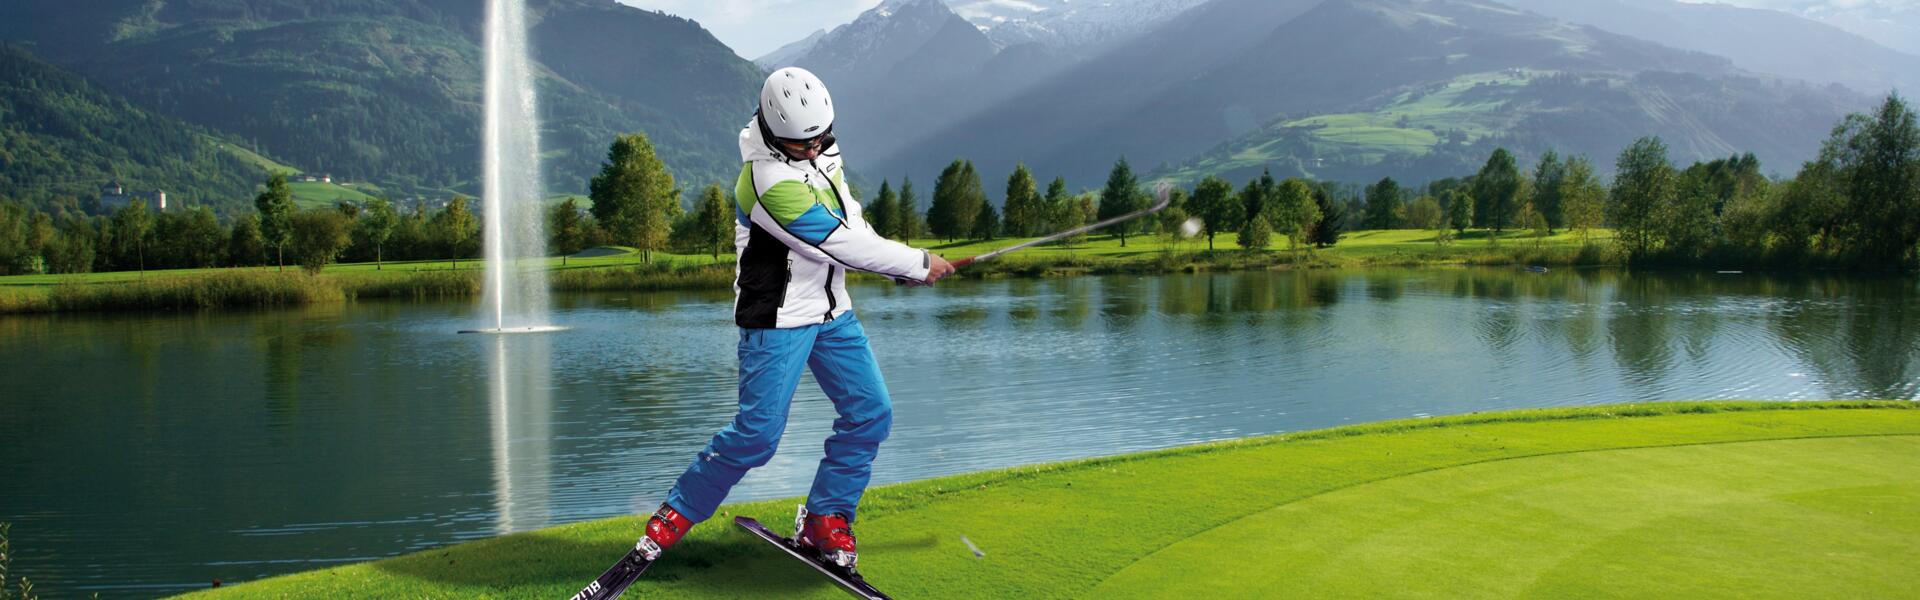 ski and golf event